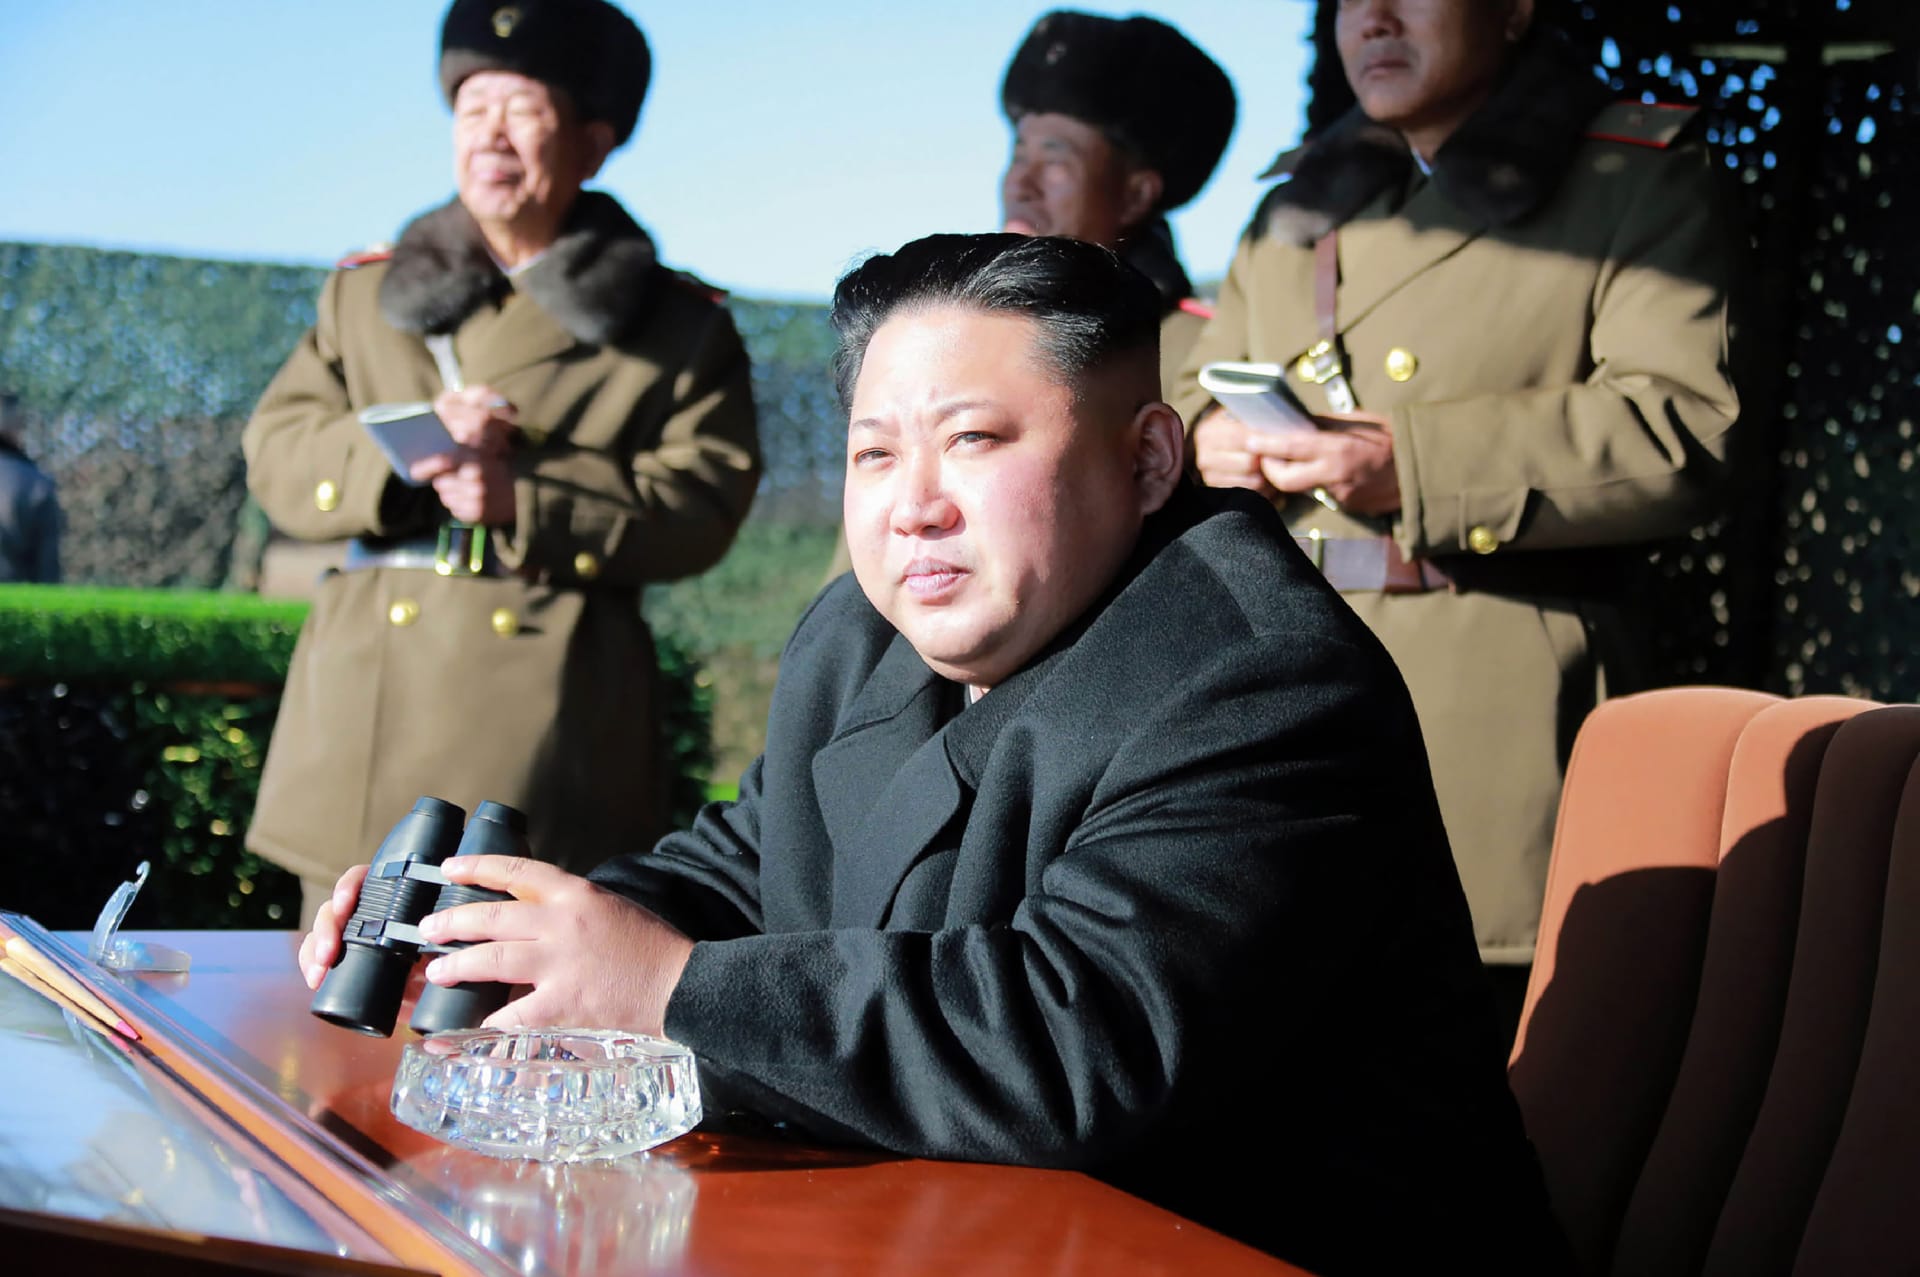 كوريا الشمالية تحذر من "انتقام أشد" بعد تدميرها مكتب الاتصال مع جارتها الجنوبية